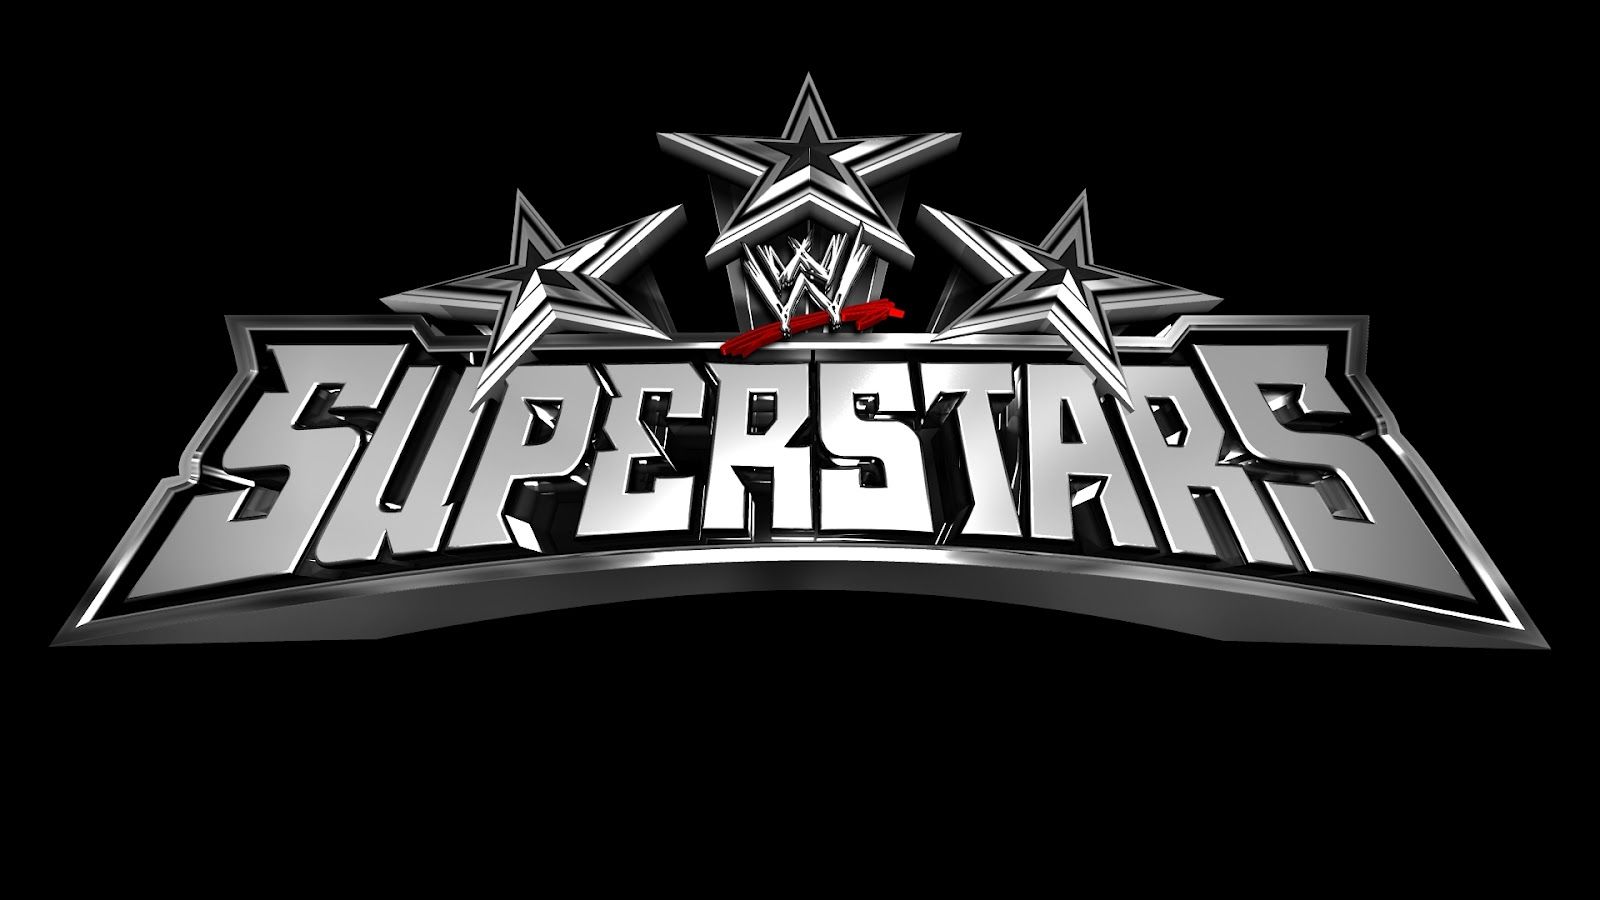 WWE WALLPAPERS: wwe logo wallpaper. wwe logo image. wwe logo pics. wwe wrestler logos. free wwe downloads. free wwe raw. wwe logo picture. wwe smackdown logo. wwe